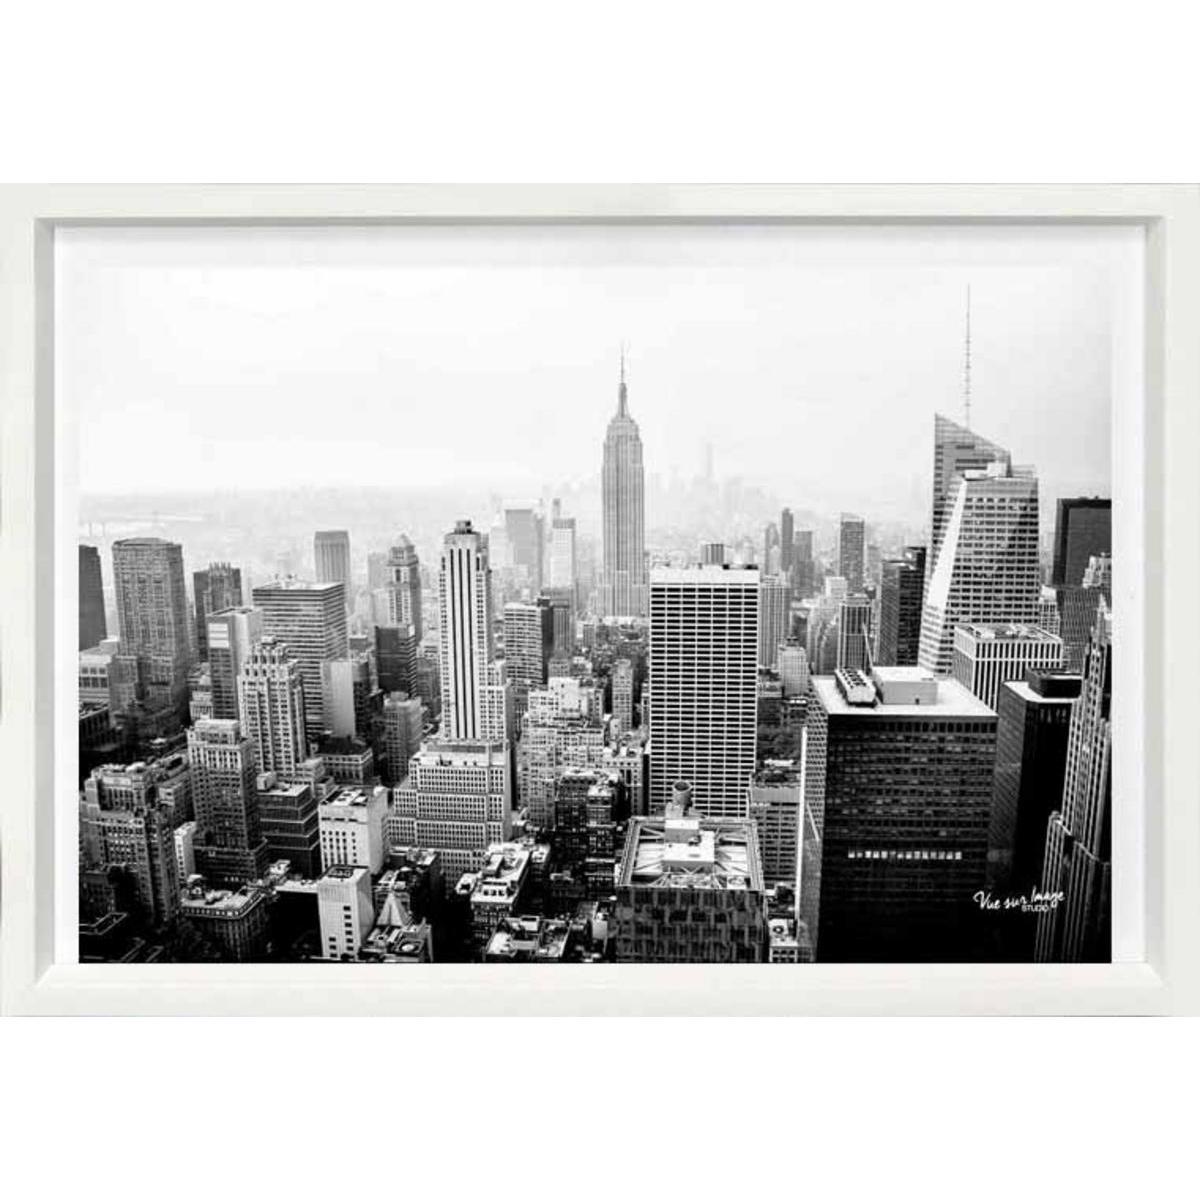 Cadre photo décoratif - Plastique - 35 x 25 cm - Noir et blanc